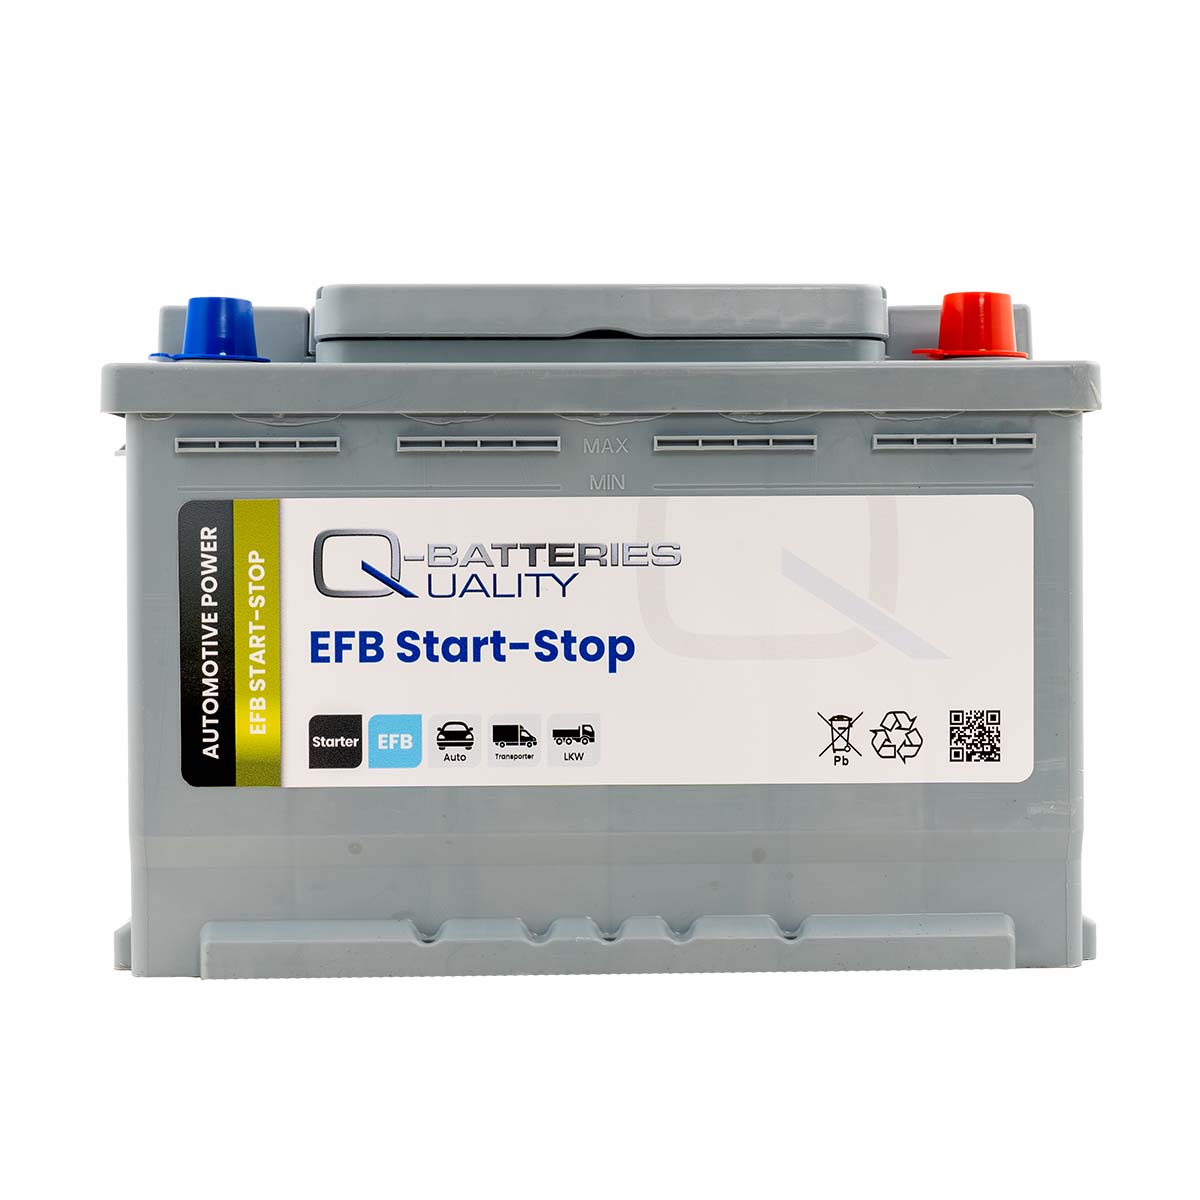 ⊳ Premium Starterbatterie für Start-Stopp-PKW